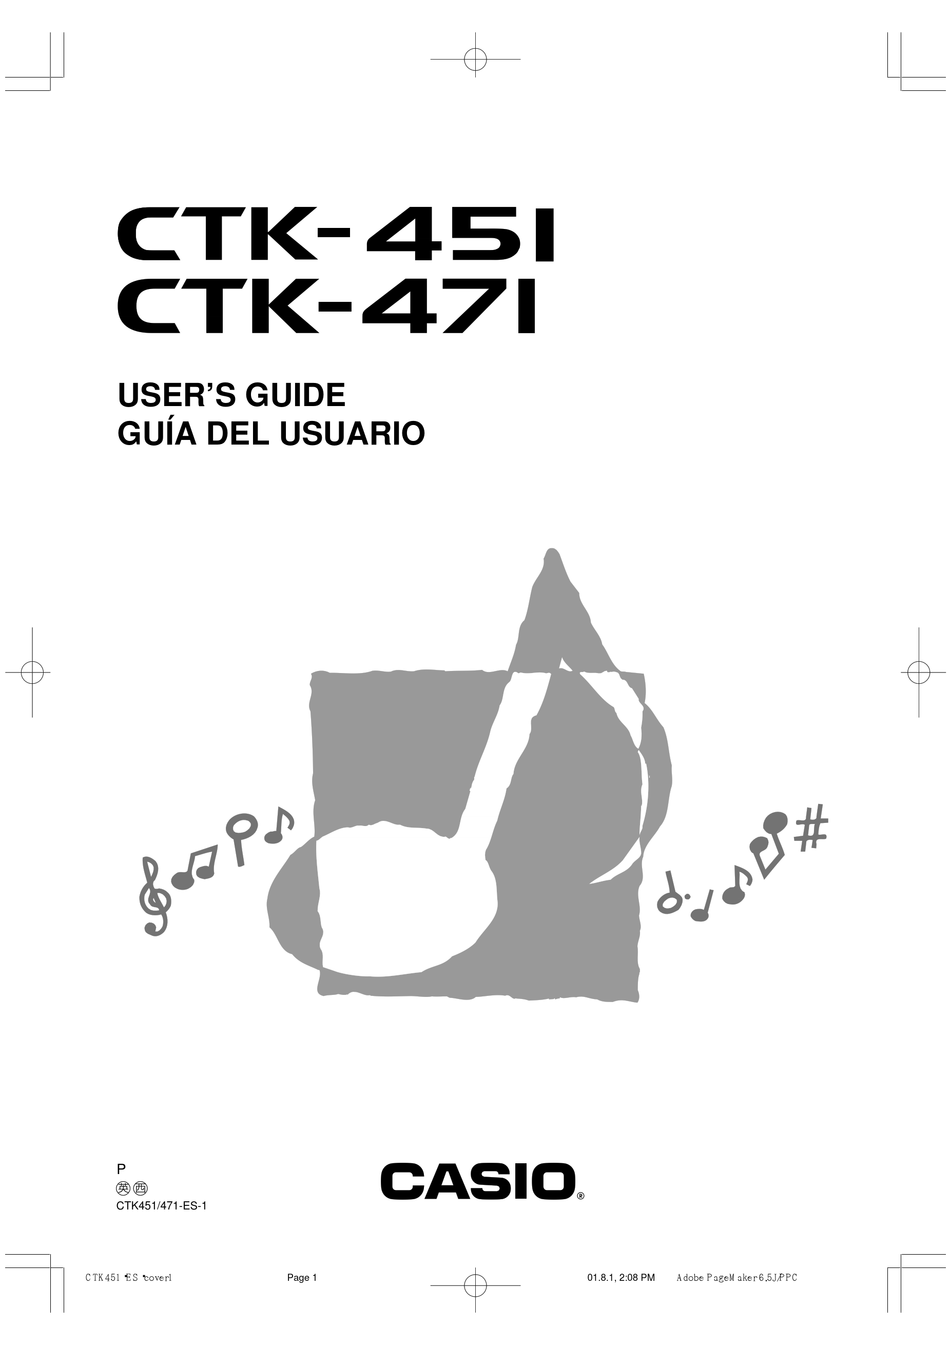 CASIO CTK-451 USER MANUAL Pdf Download | ManualsLib